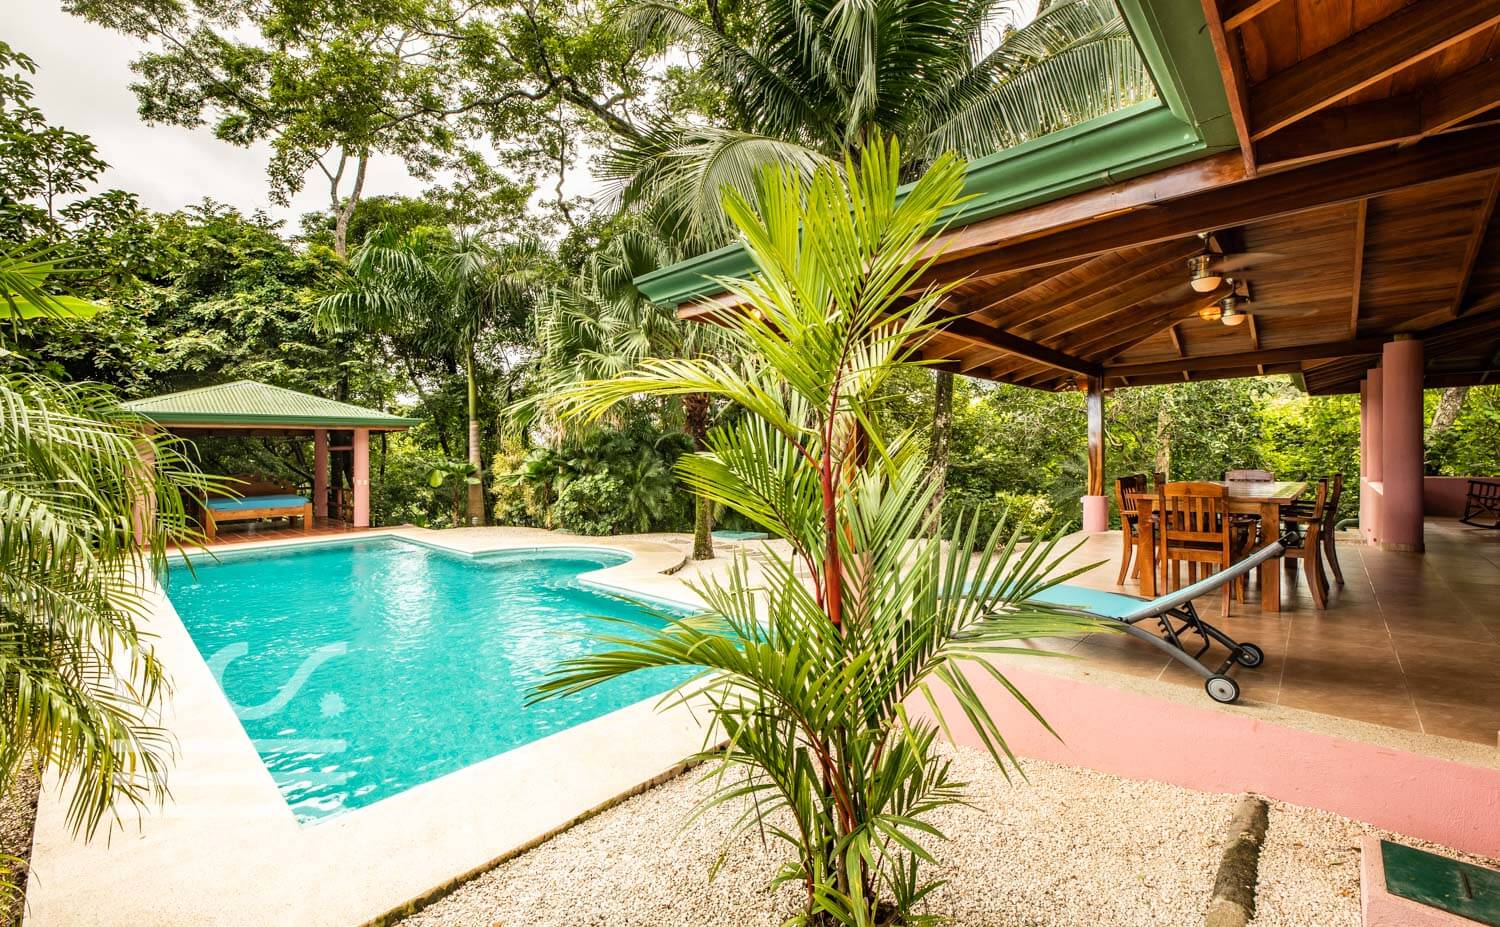 Casa-Nadine-Wanderlust-Realty-Real-Estate-Retals-Nosara-Costa-Rica-8.jpg